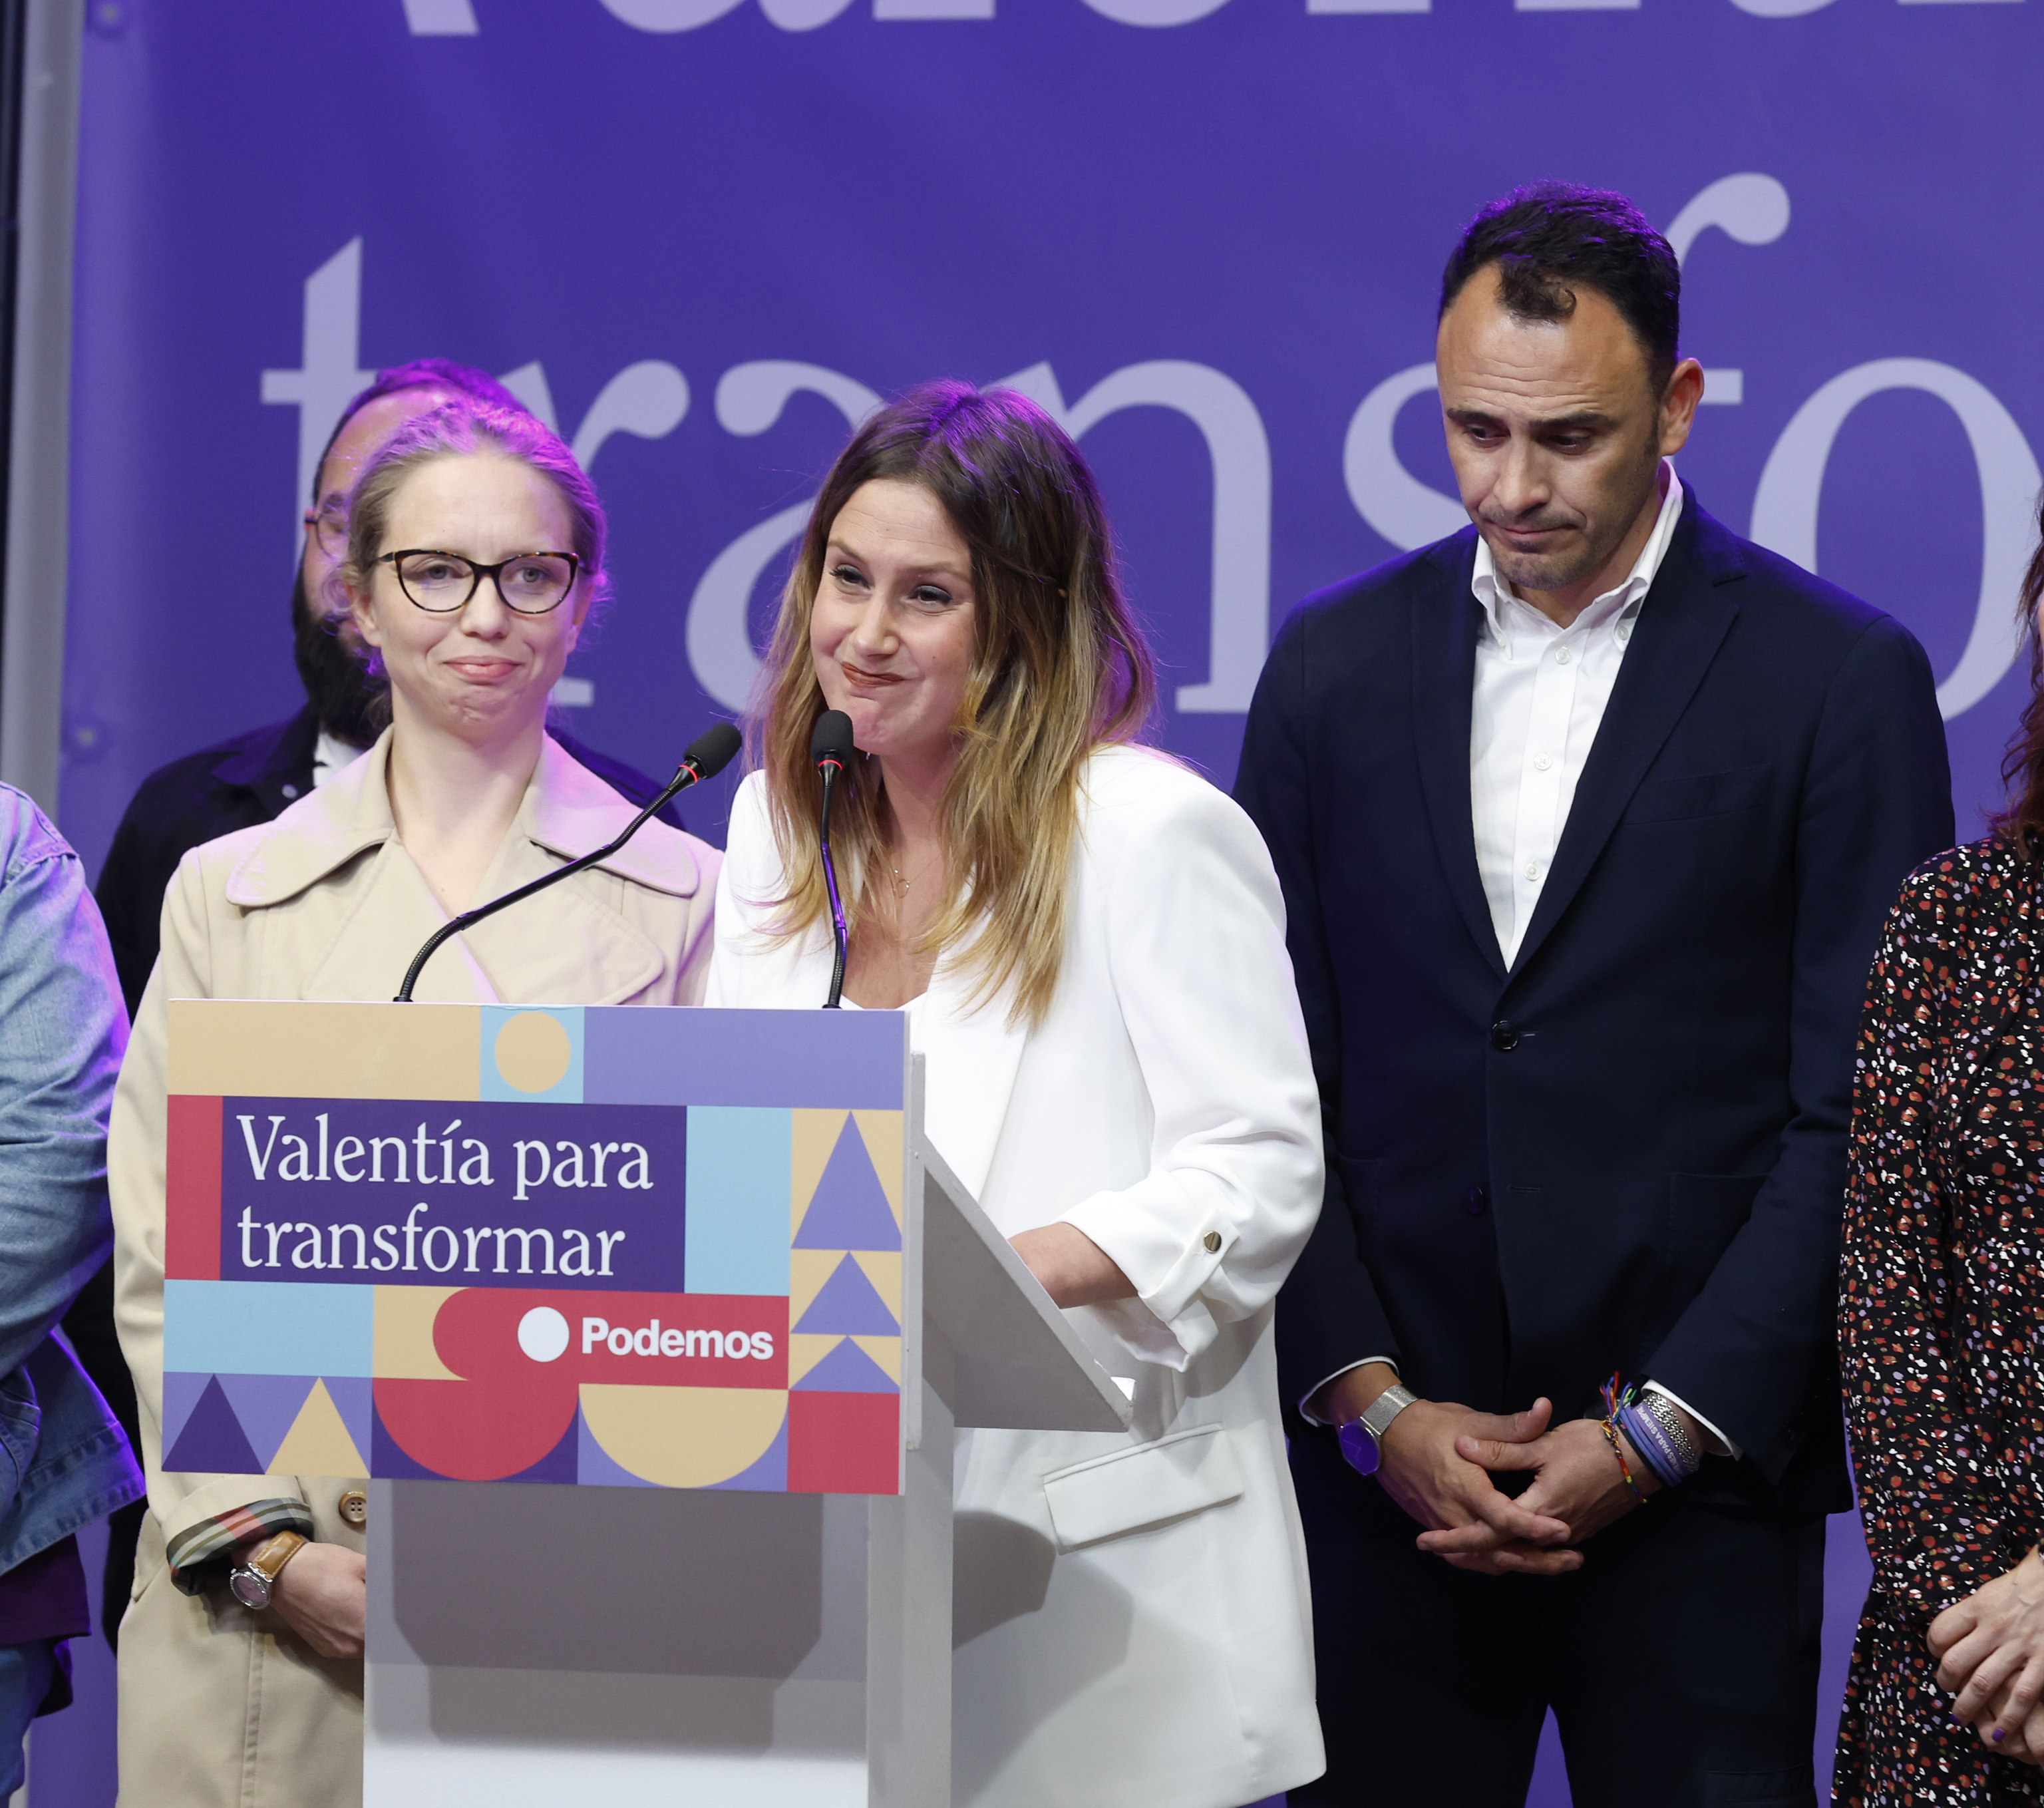 La ruina económica de Podemos en Madrid: afiliados convertidos en acreedores a los que debe 500.000 euros